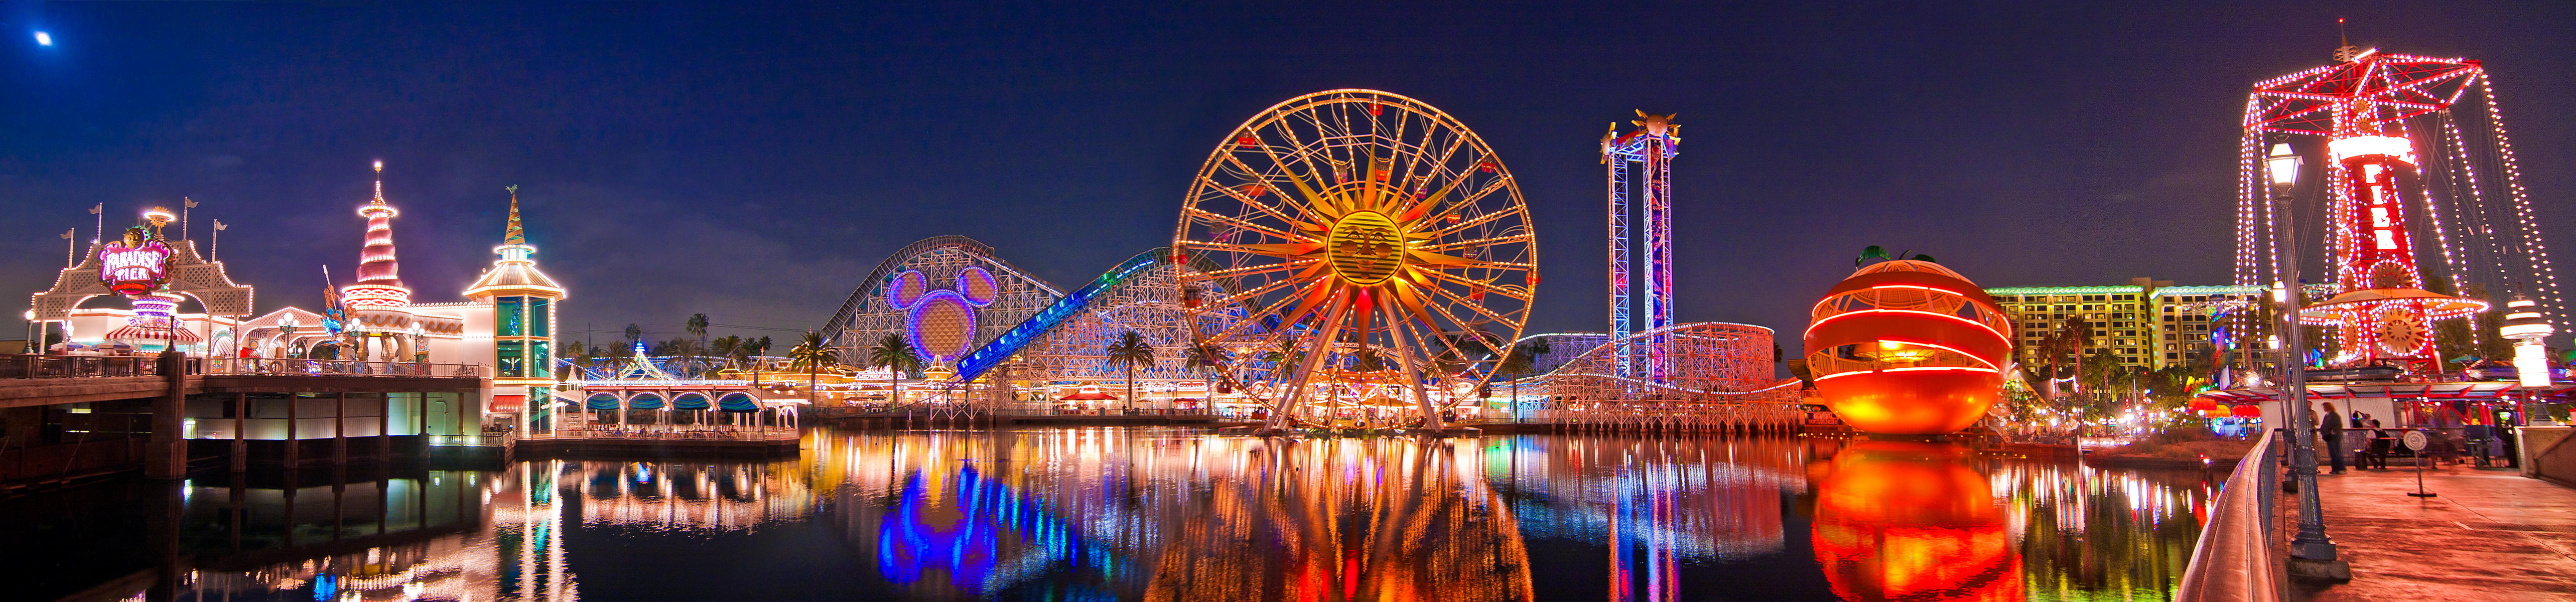 Original Paradise Pier Panorama Disney Tourist